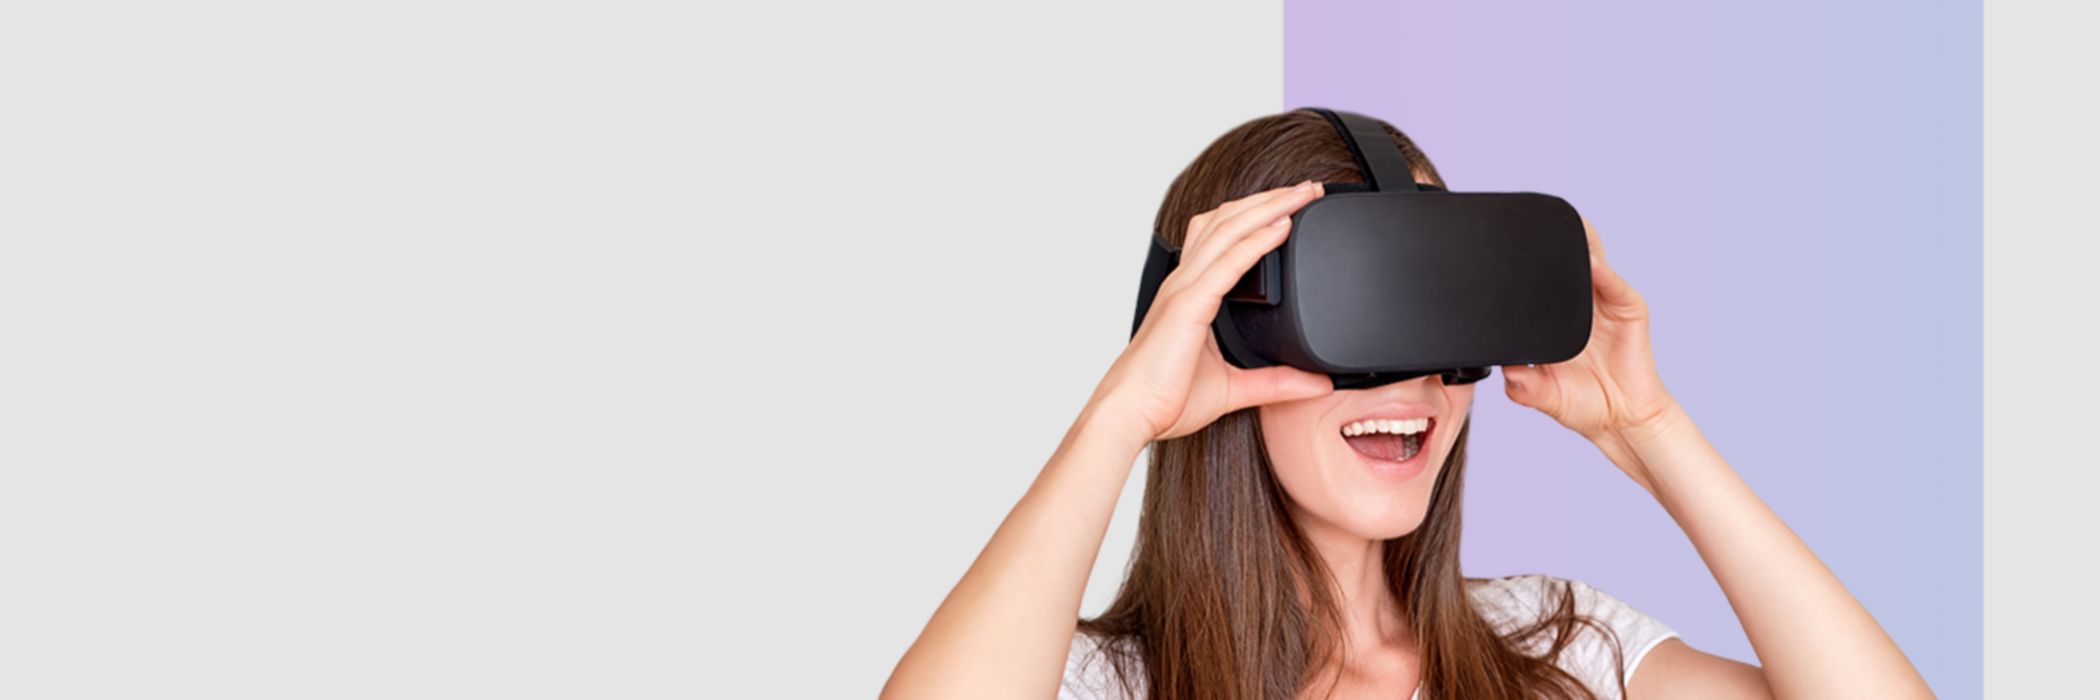 Frau mit virtuell Reality Brille steht vor grauem Hintergrund.